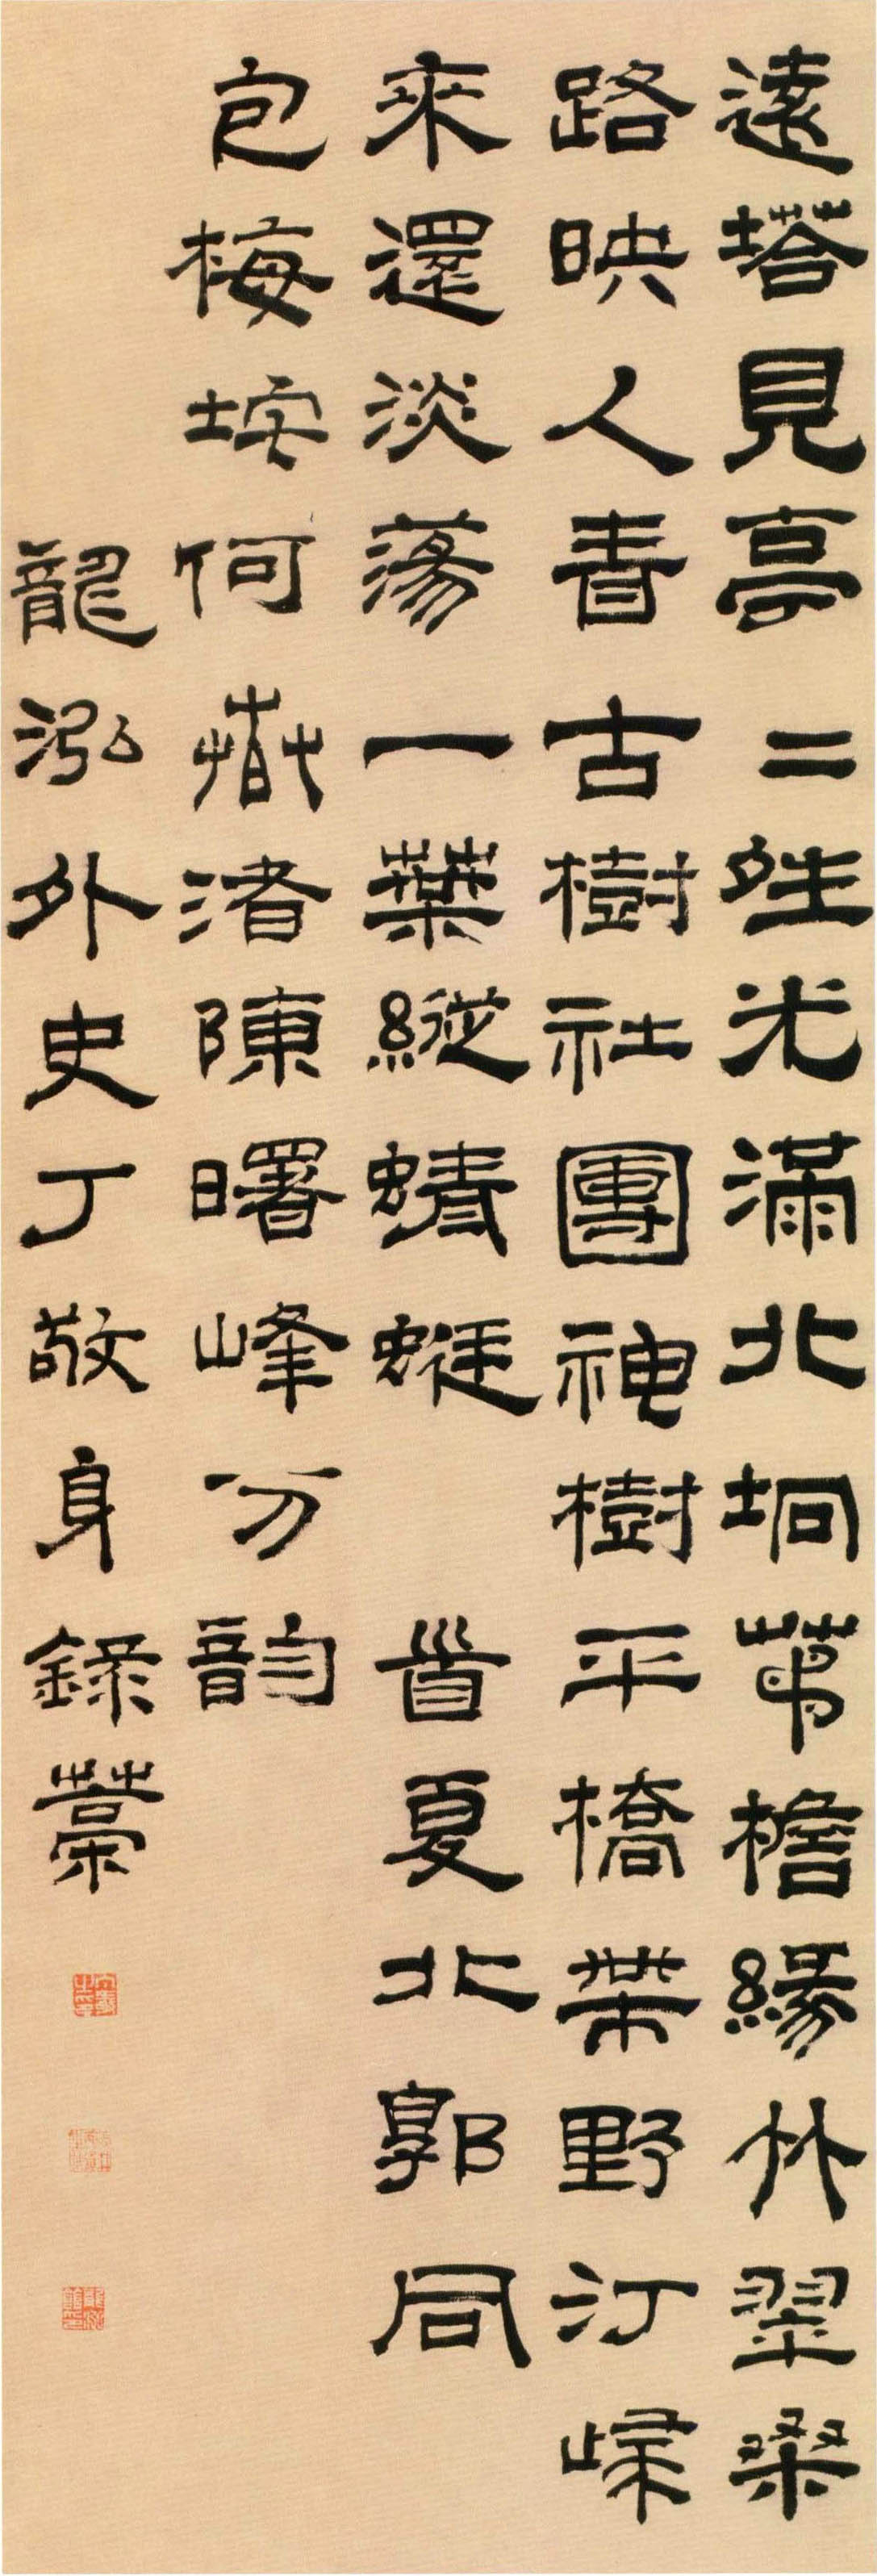 丁敬《隶书五律诗轴》-北京故宫博物院藏(图1)